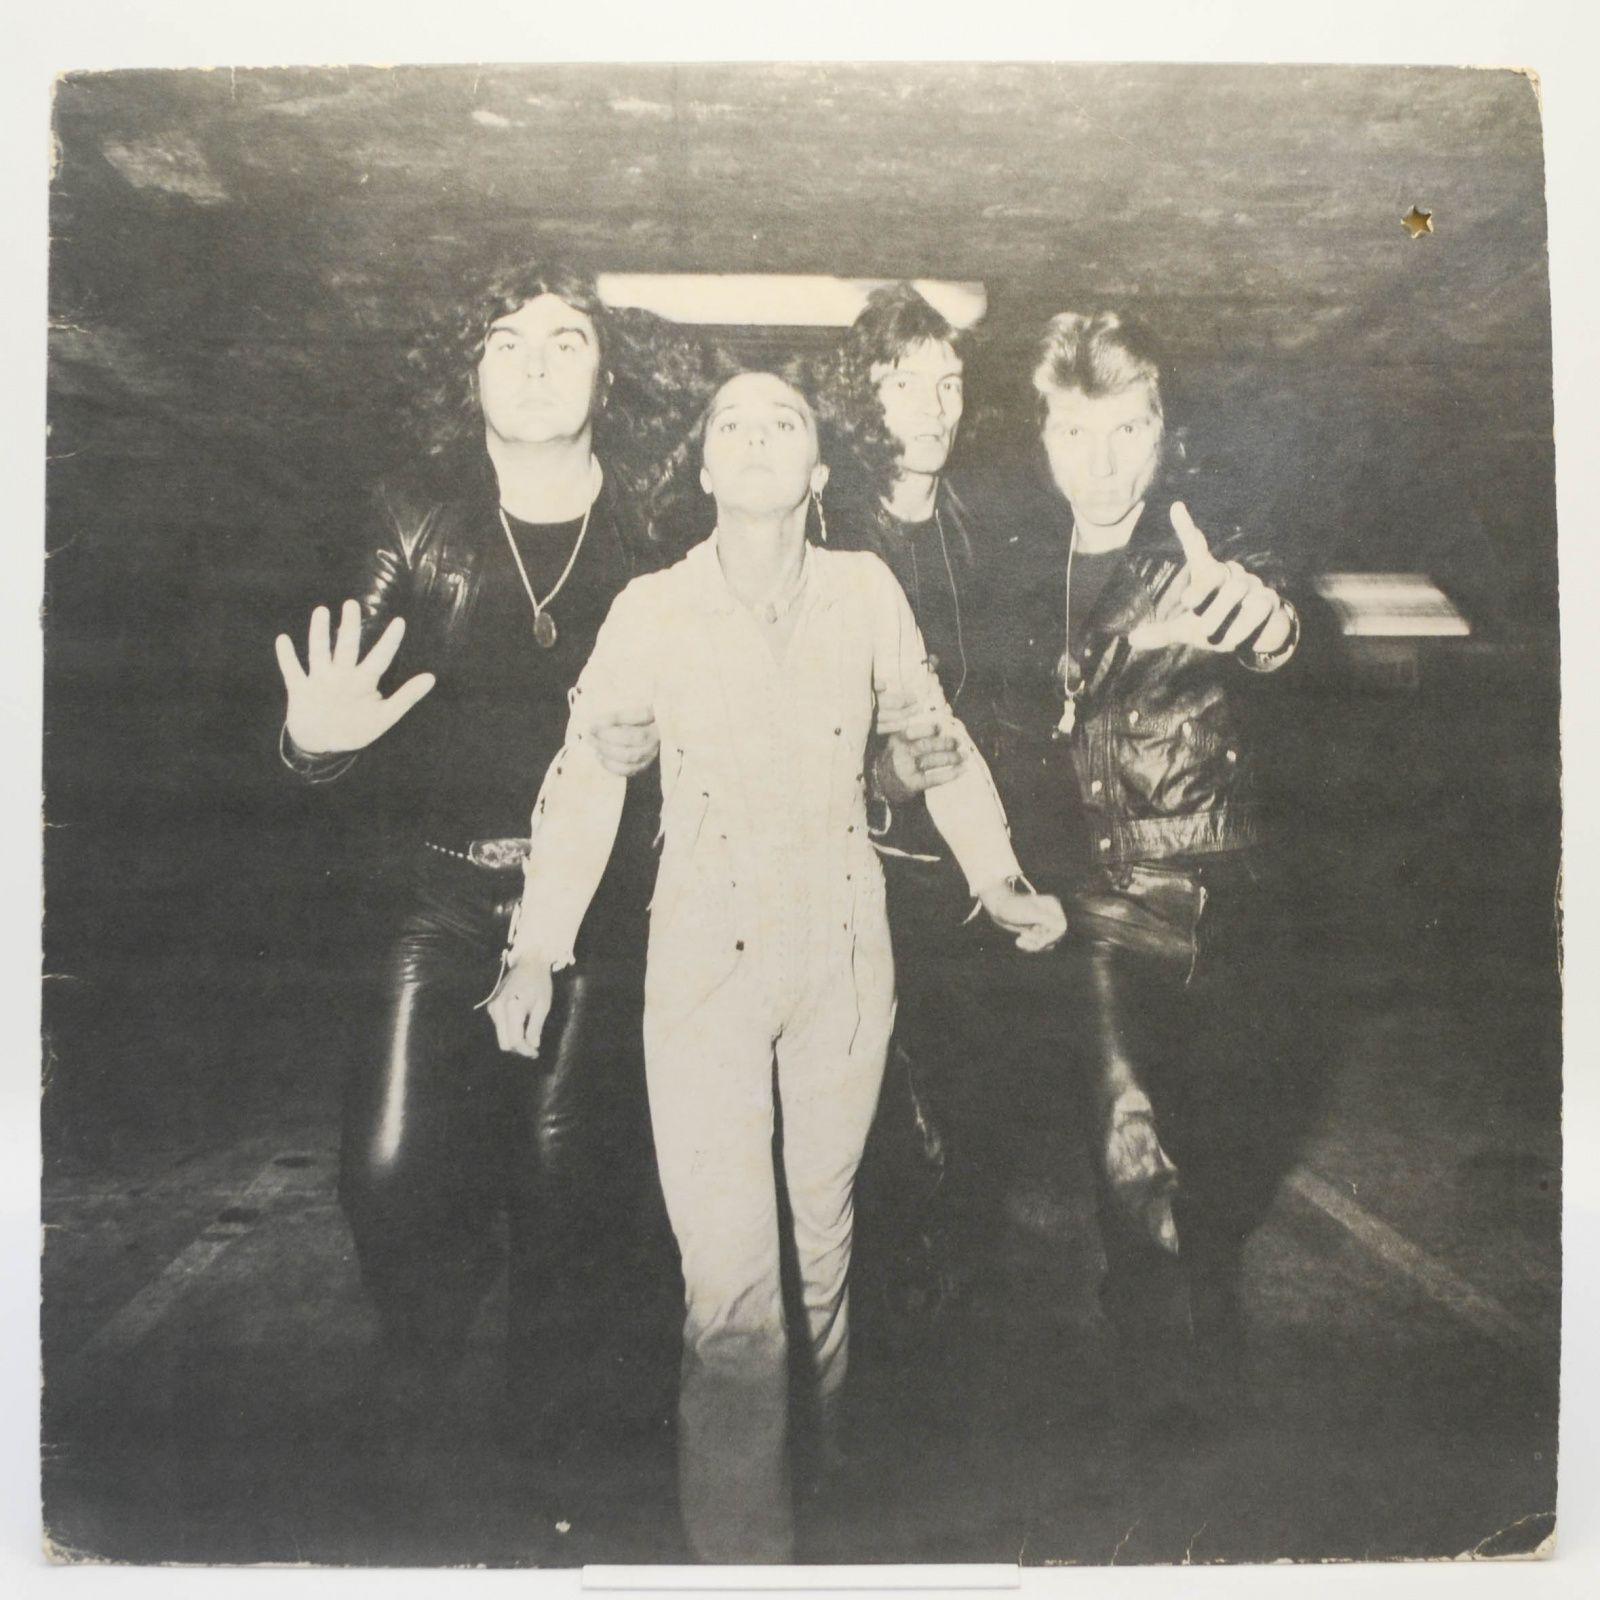 Suzi Quatro — Aggro-Phobia, 1976